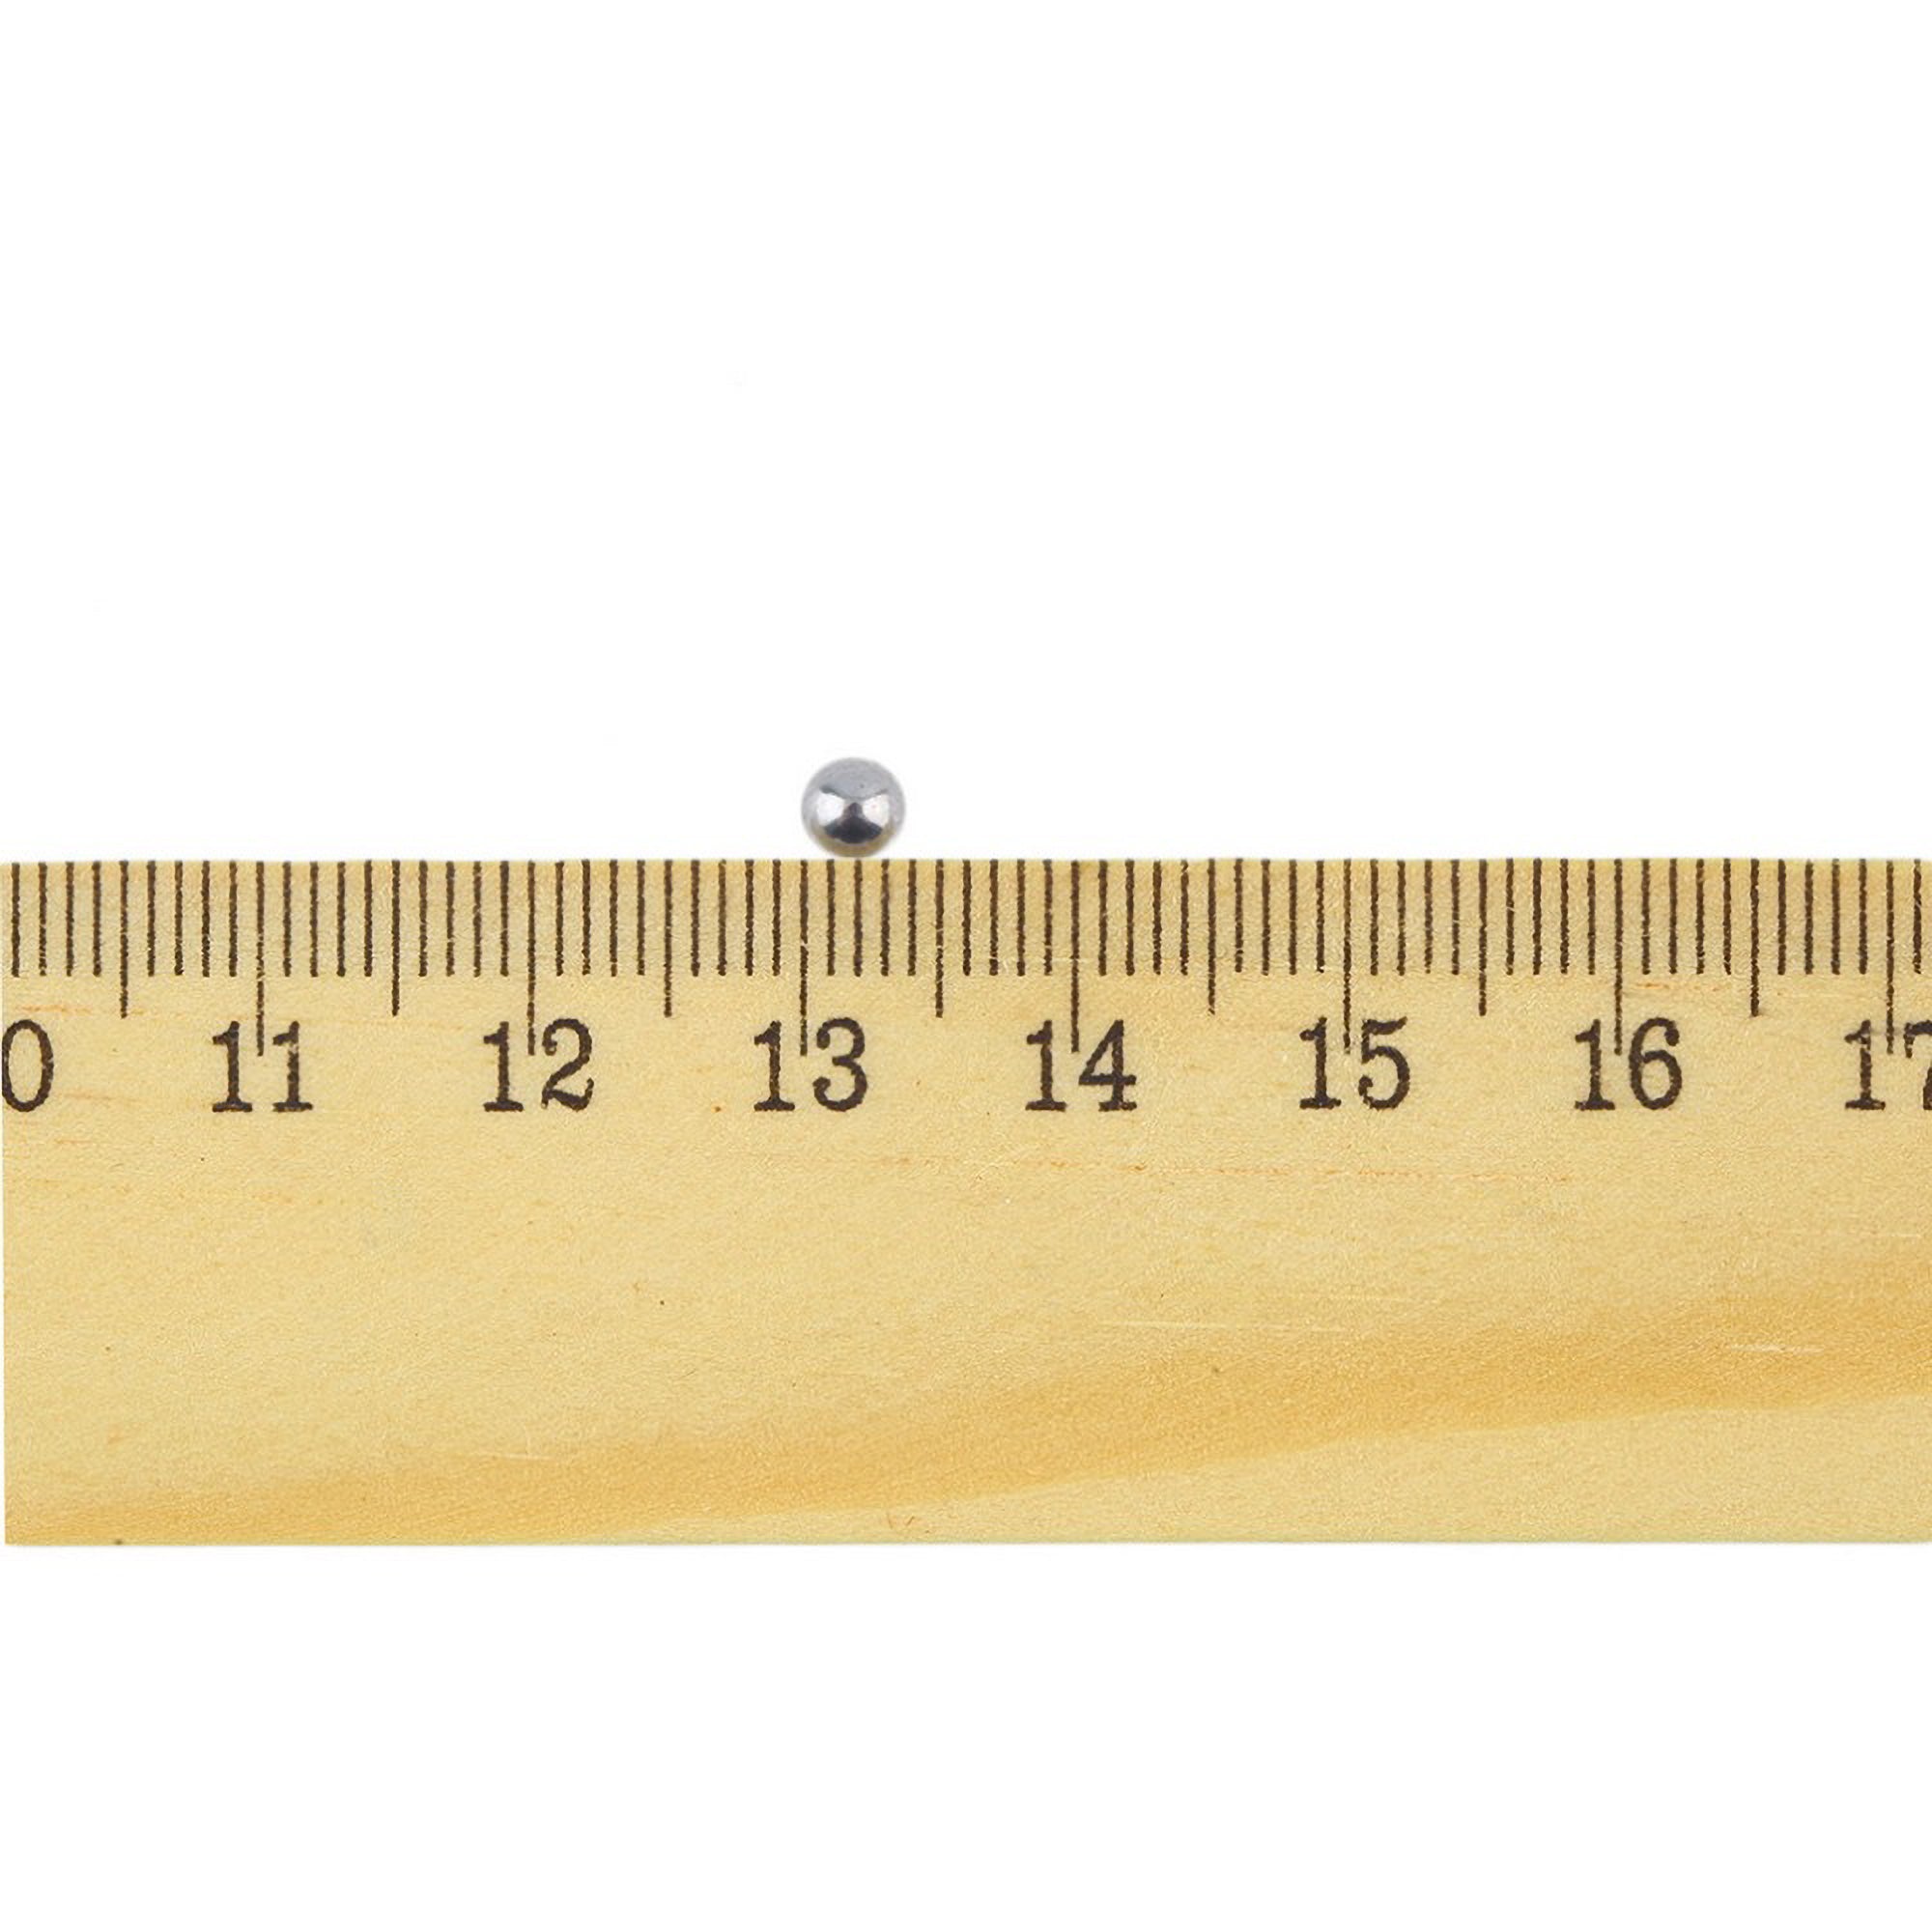 4mm ruler